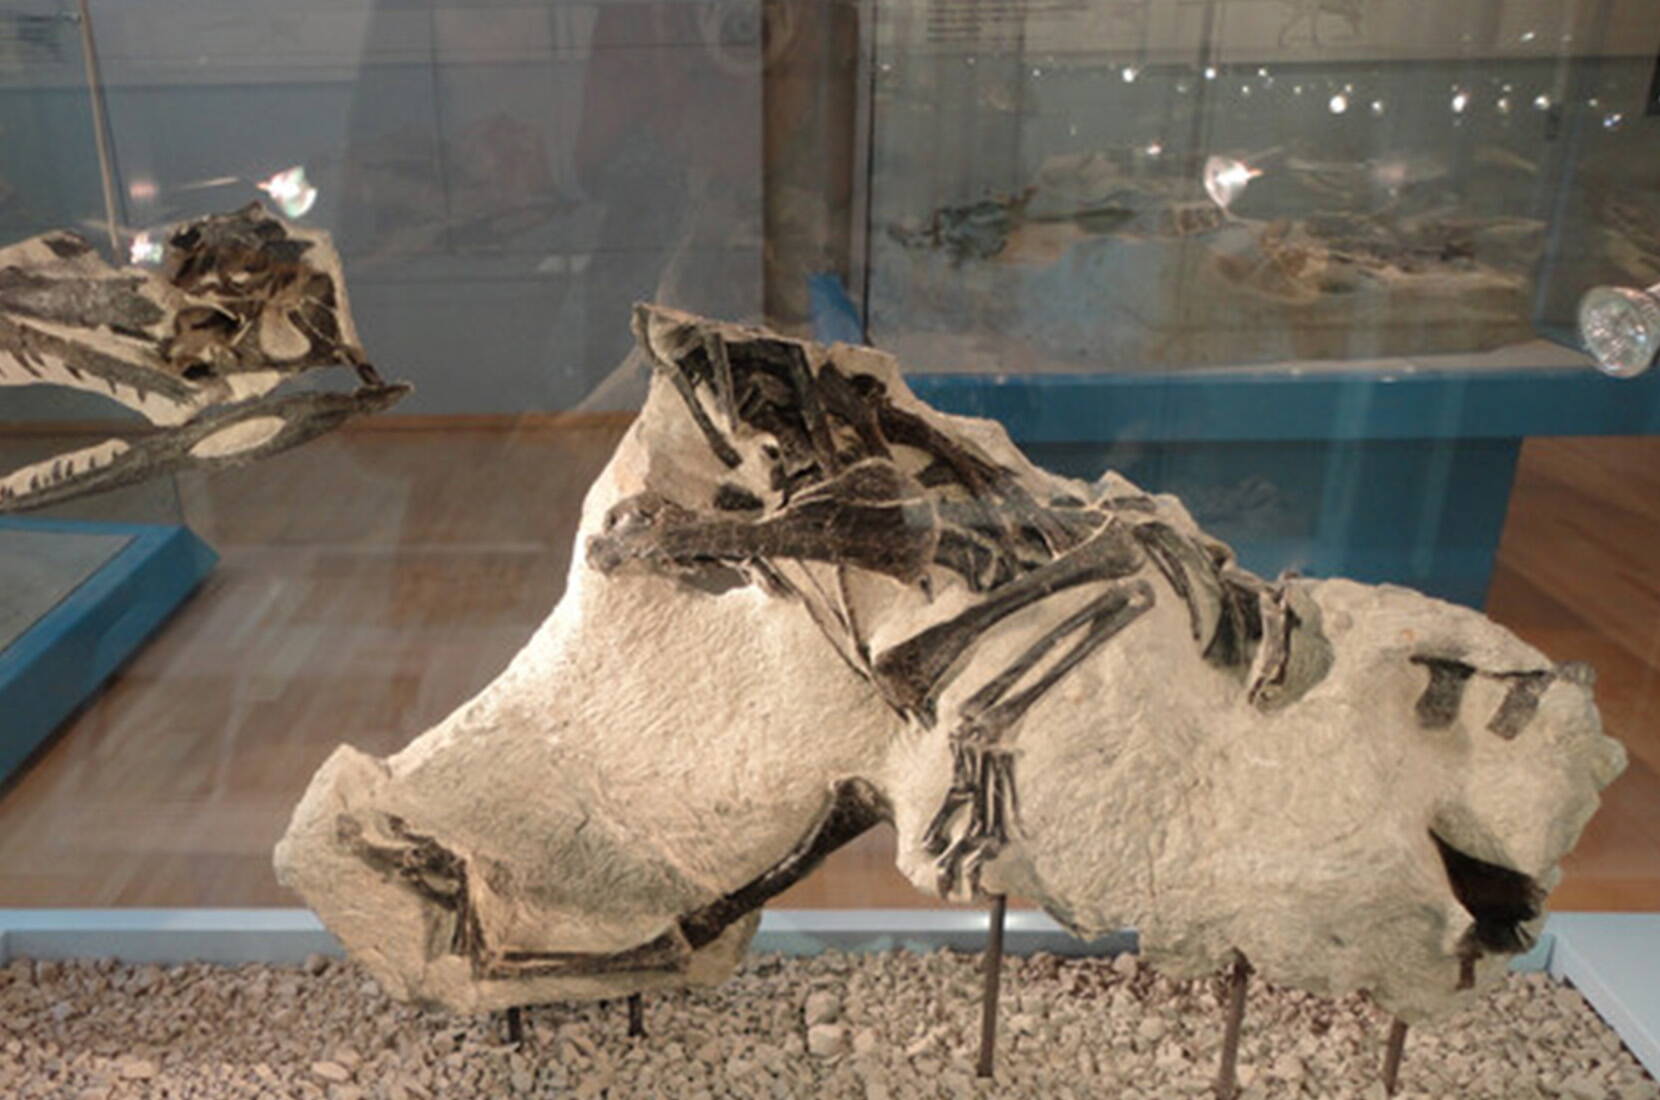 Gutschein für den Gratiseintritt ins Sauriermuseum Frick. Lade dir deinen Gratiseintrittsgutschein herunter und mach dich bereit für eine Reise in die Vergangenheit. Im Sauriermuseum Frick kannst du die Knochen der sogenannten Plateosaurier aus der Triaszeit hautnah erleben. Darunter befindet sich das vollständigste Dinosaurierskelett, das je in der Schweiz gefunden wurde.